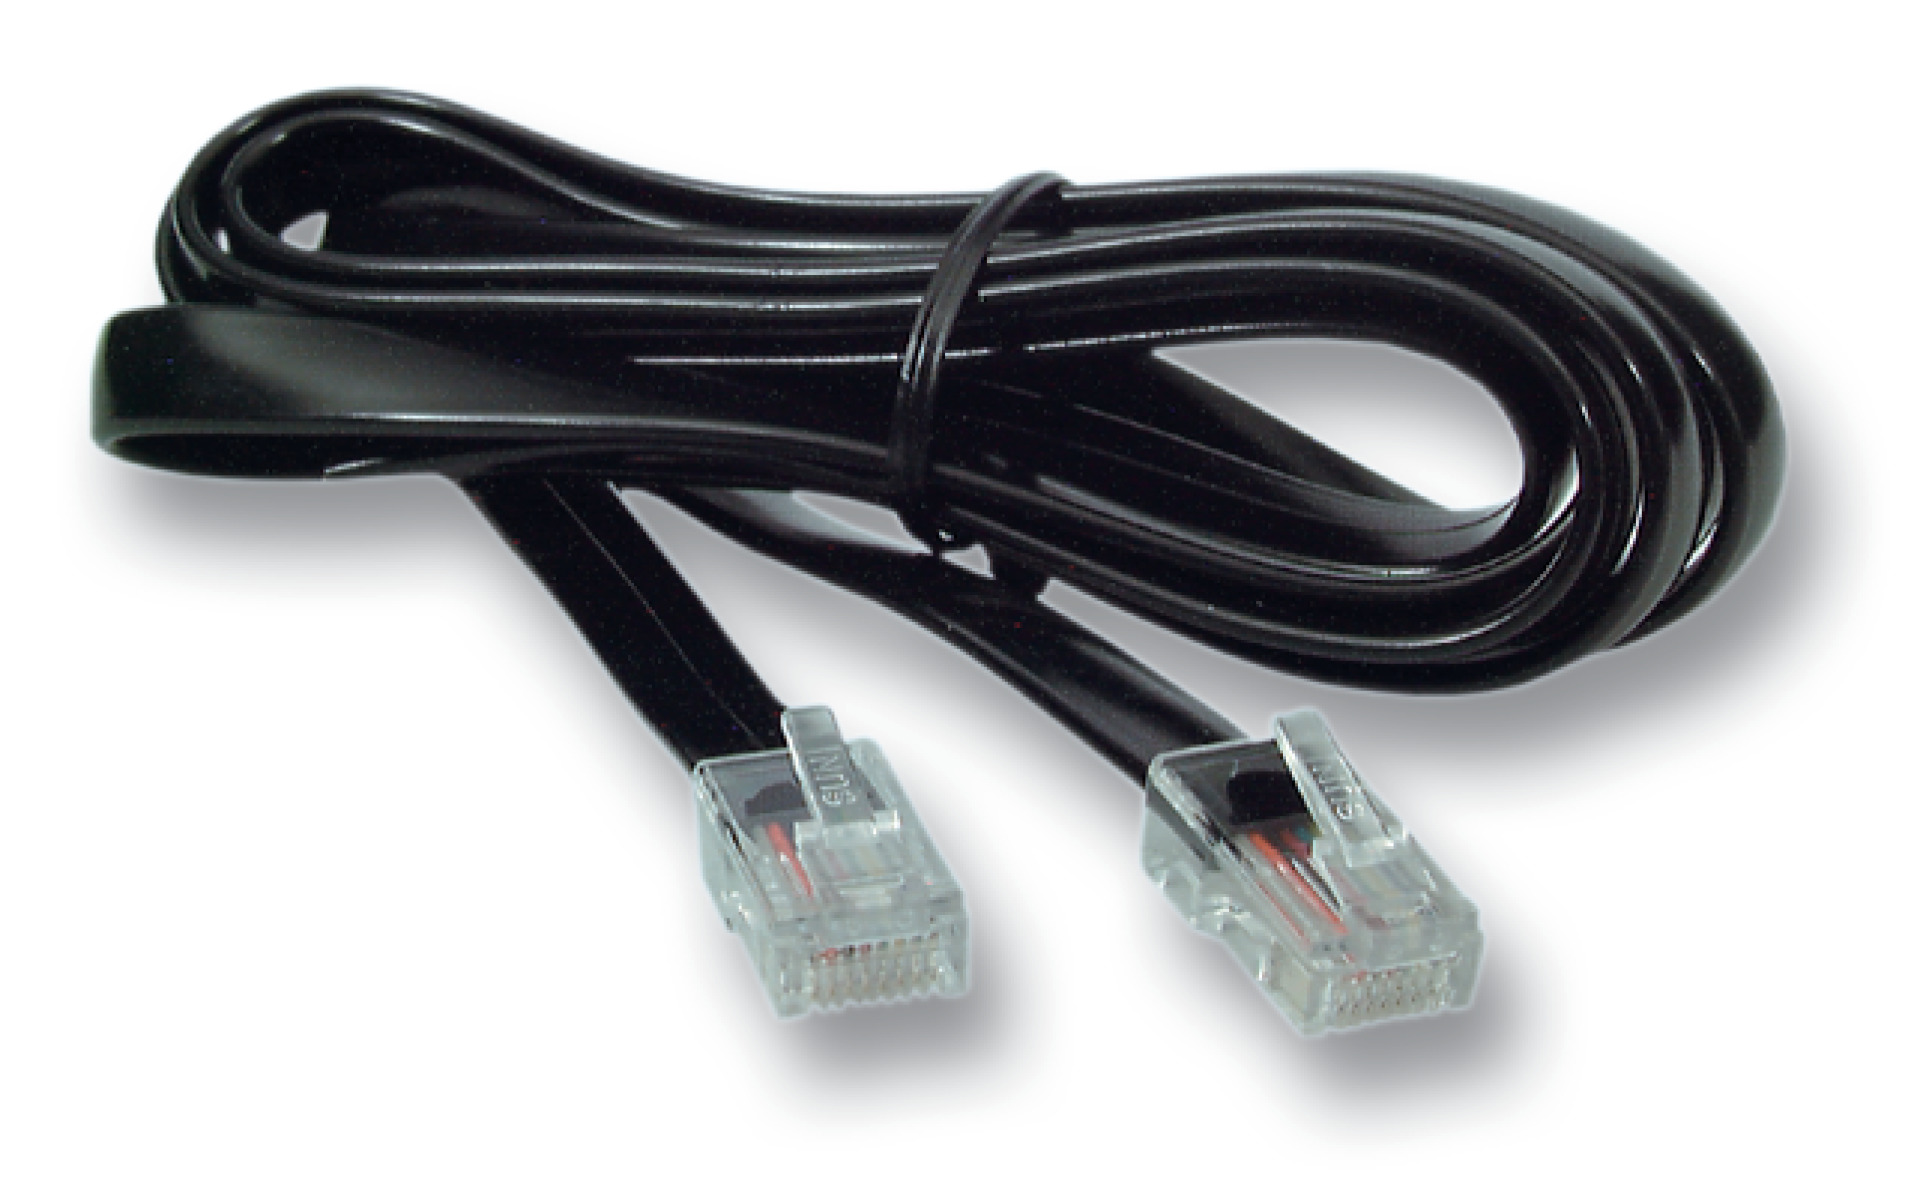 Modular cable RJ45 (8/8)/RJ45 (8/8), 1:1, flat cable, 6,0m